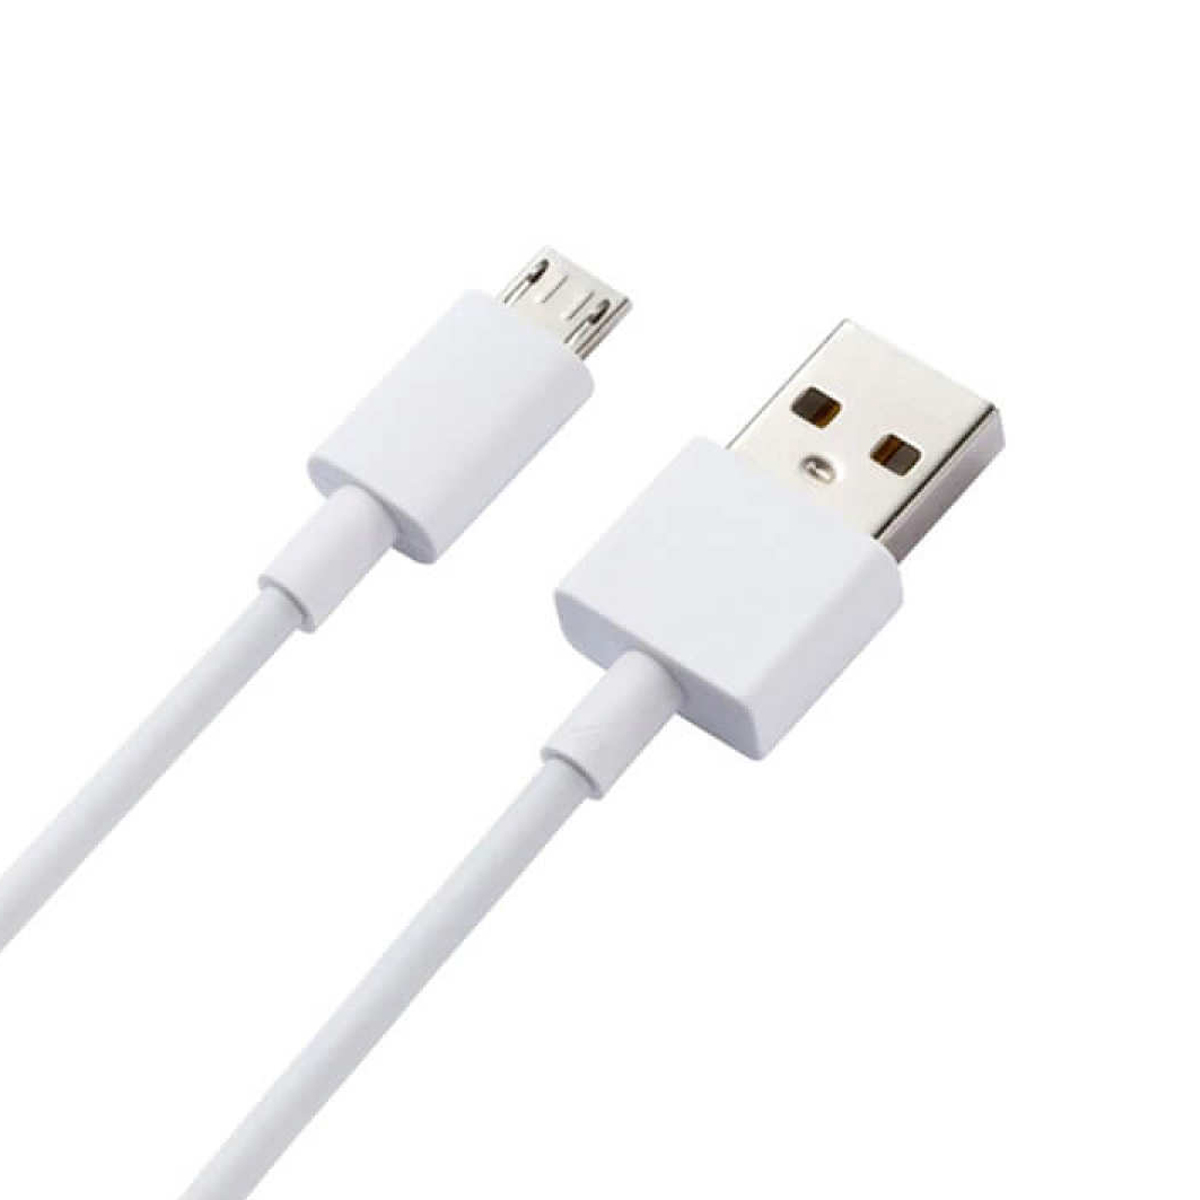 Xiaomi Micro USB Cable